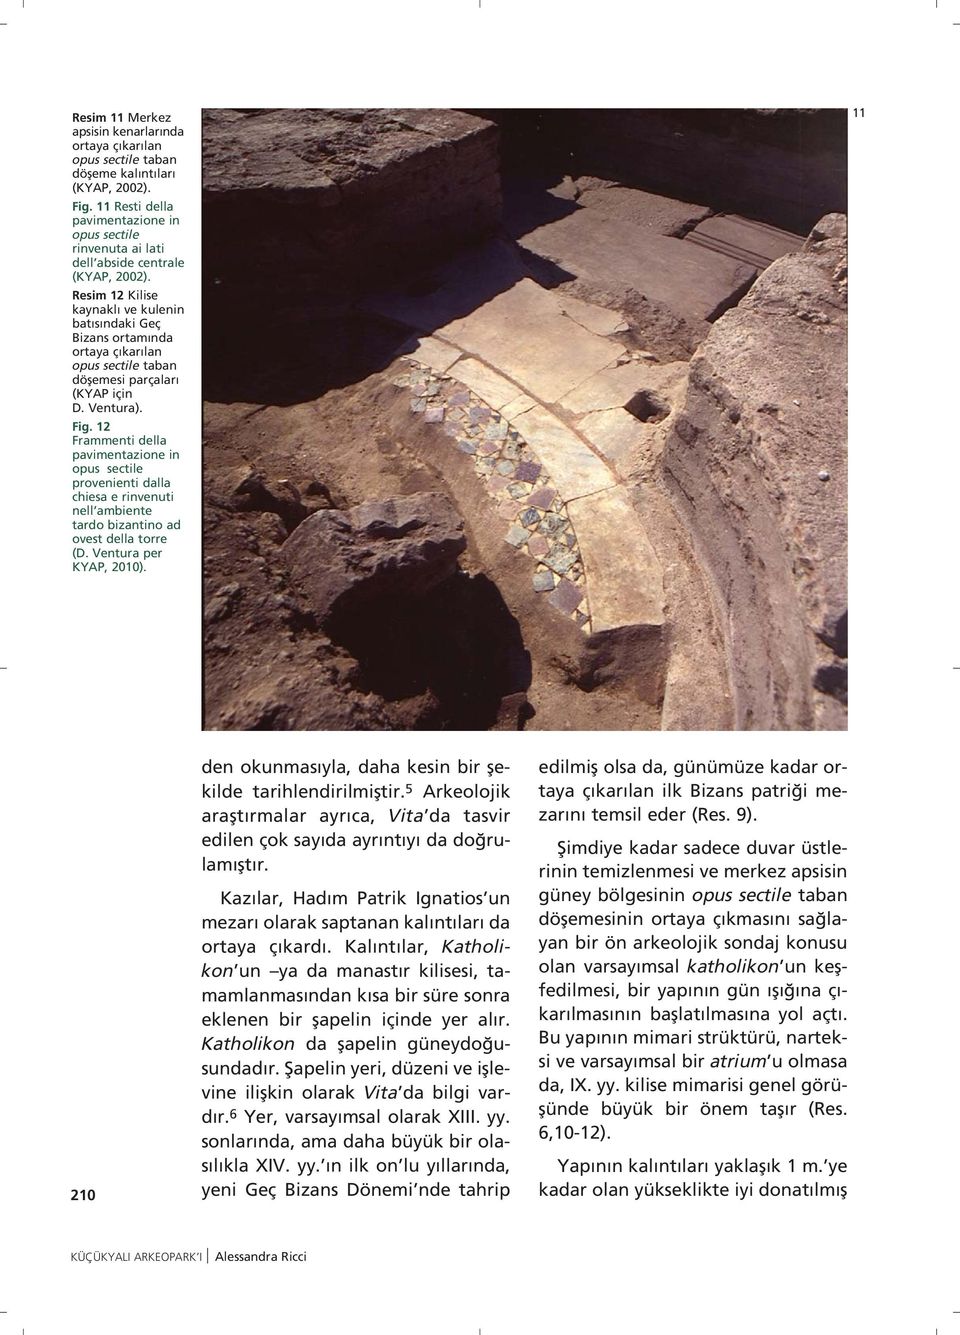 Resim 12 Kilise kaynakl ve kulenin bat s ndaki Geç Bizans ortam nda ortaya ç kar lan opus sectile taban döflemesi parçalar (KYAP için D. Ventura). Fig.